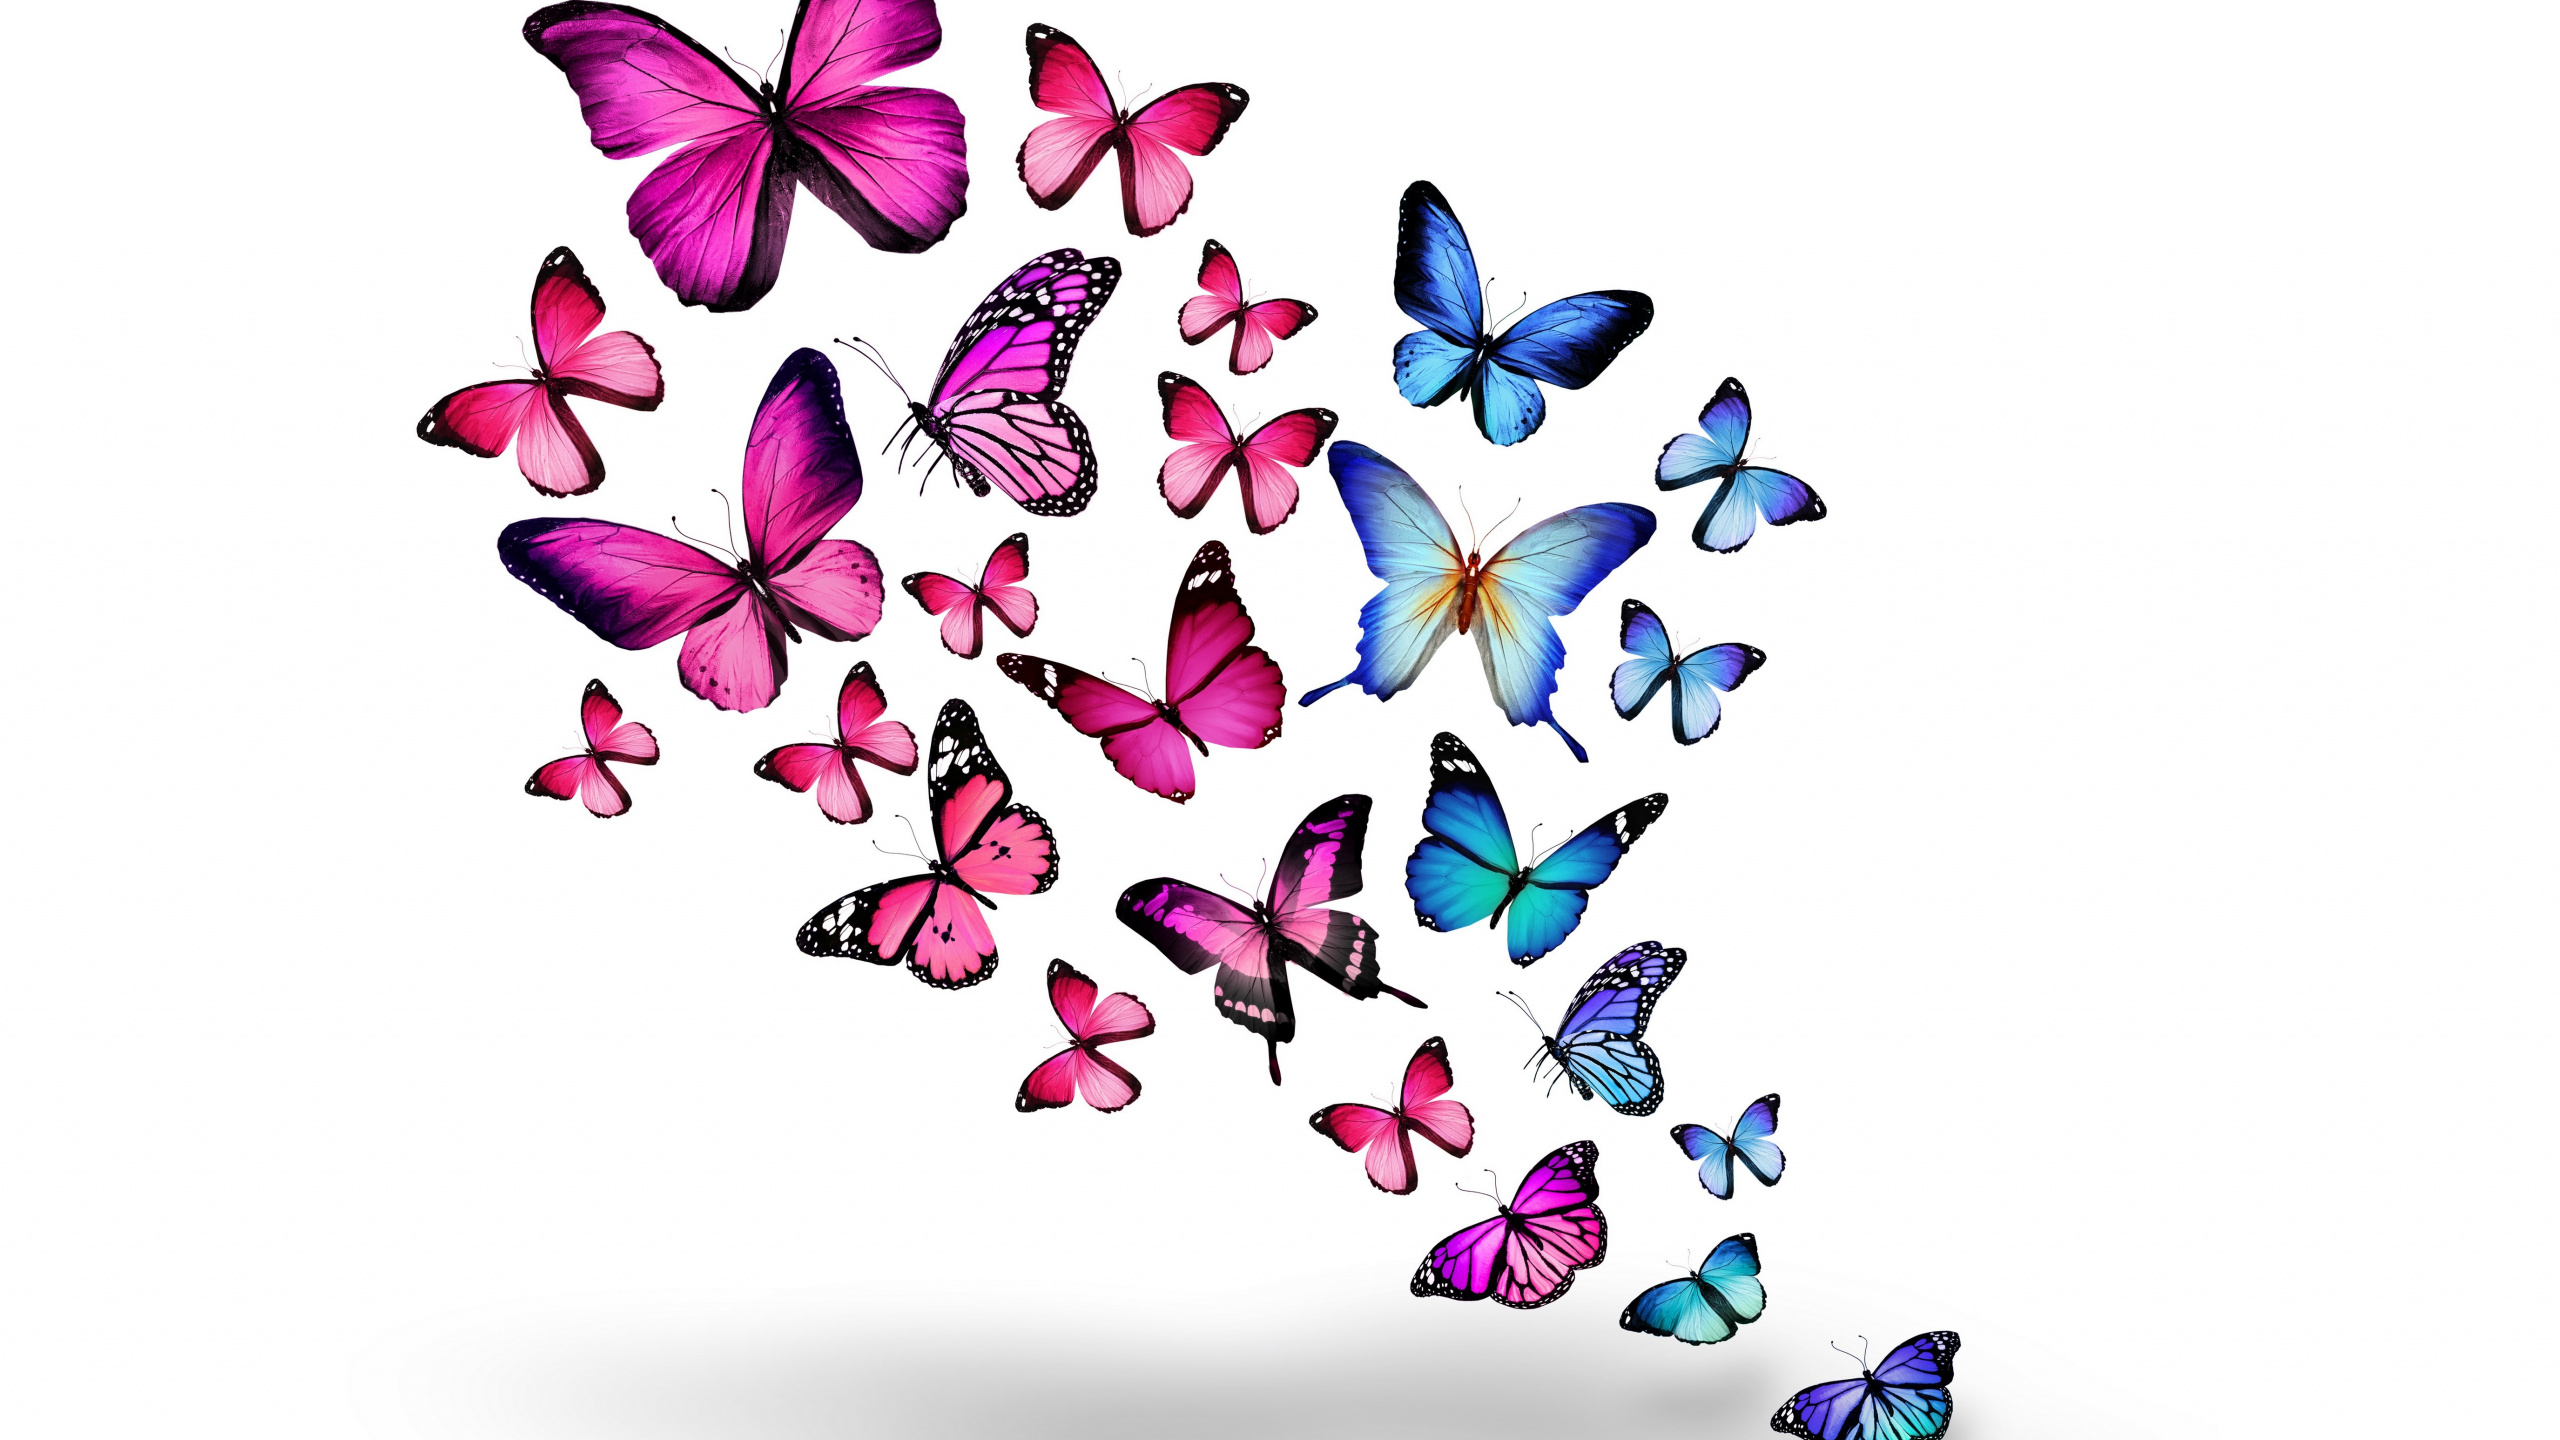 Papillons Bleus et Violets Sur Fond Blanc. Wallpaper in 2560x1440 Resolution